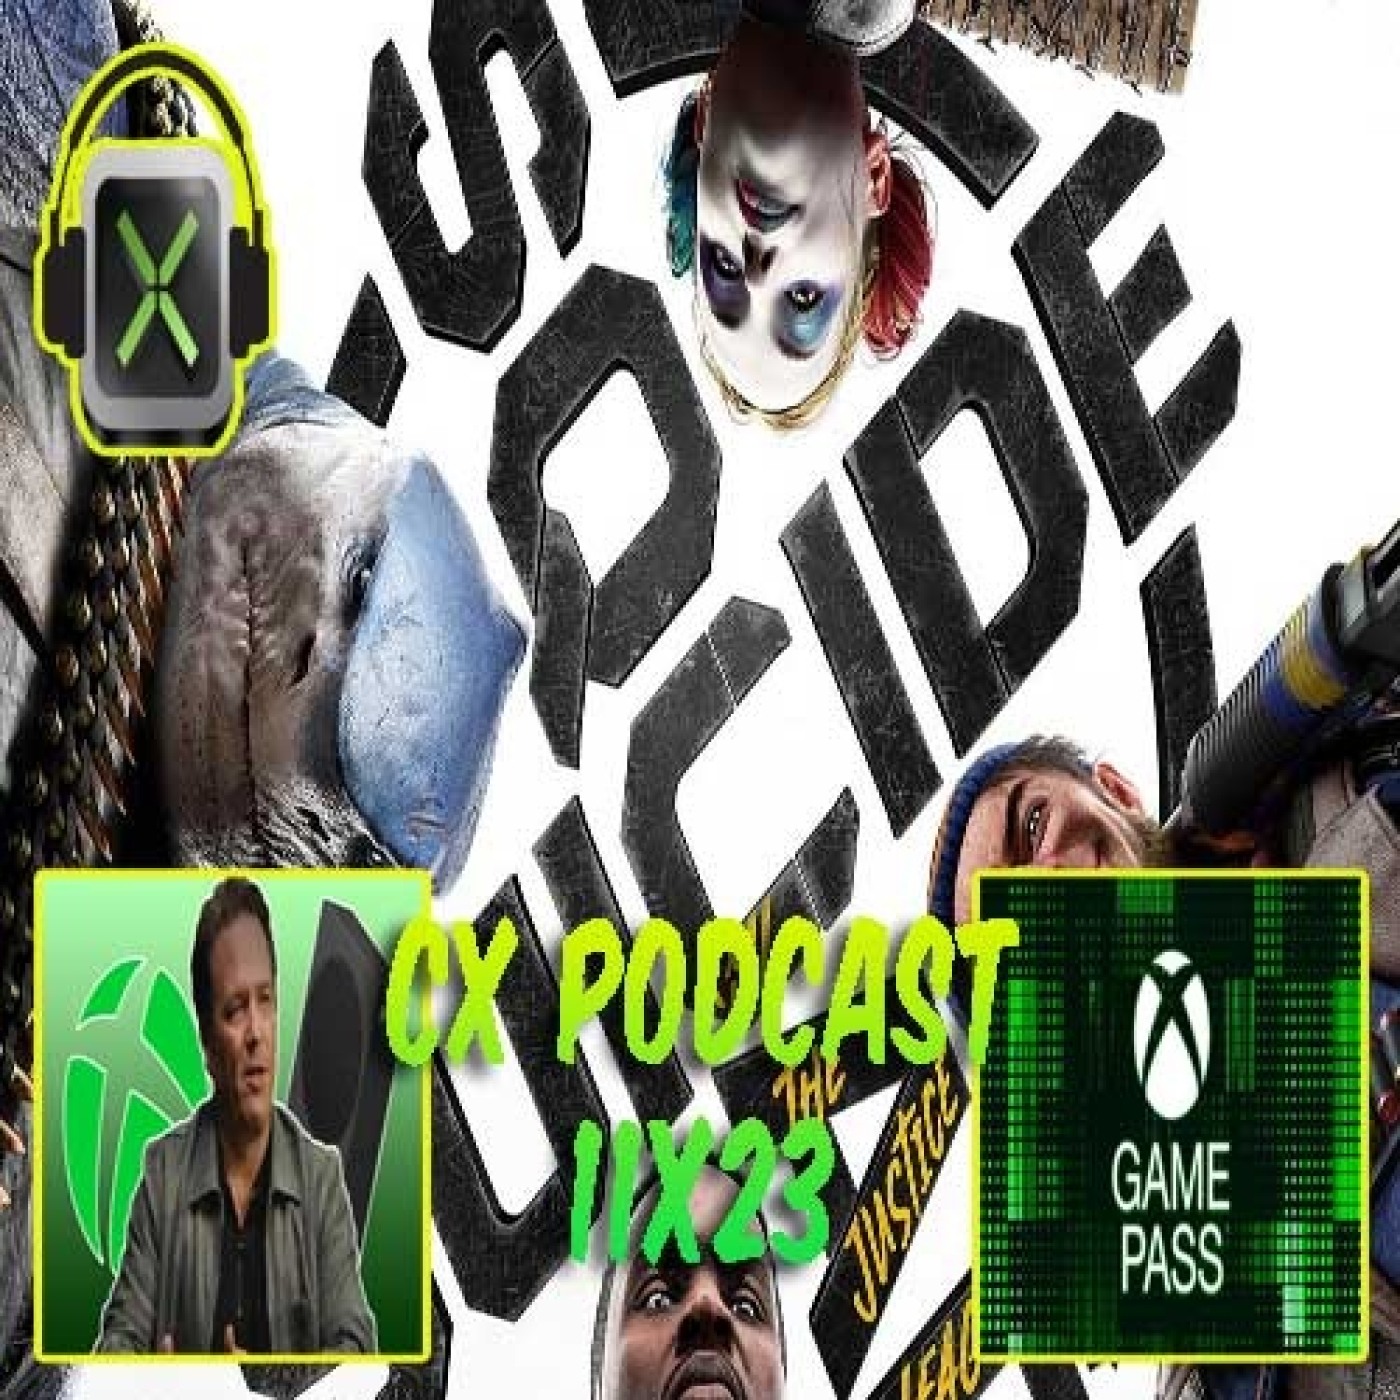 CX Podcast 11x23 - Análisis de Suicide Squad